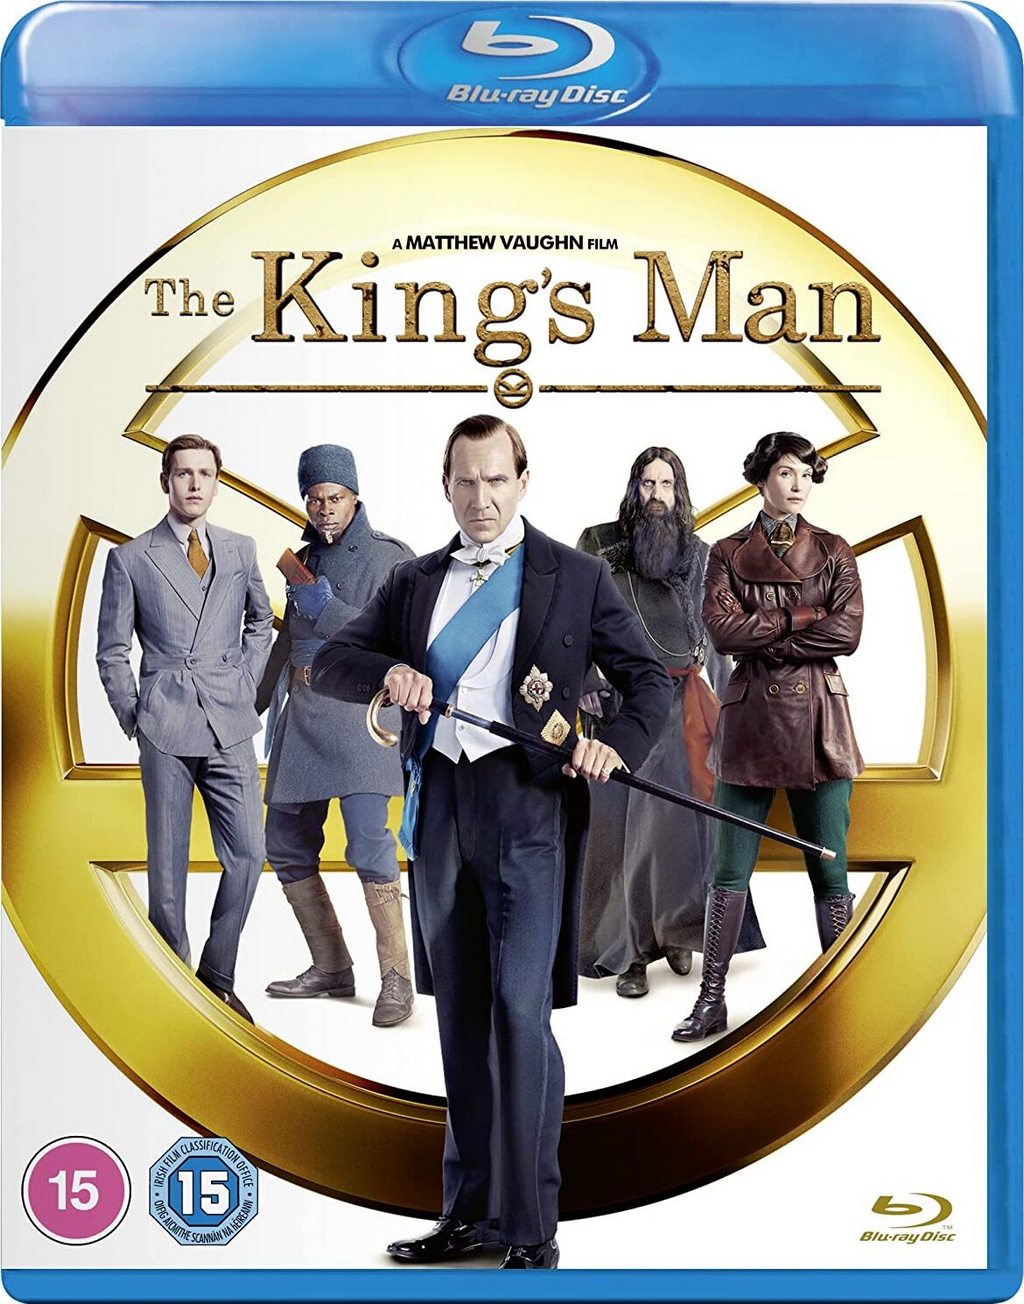 The King's Man (2021) : กำเนิดโคตรพยัคฆ์คิงส์แมน